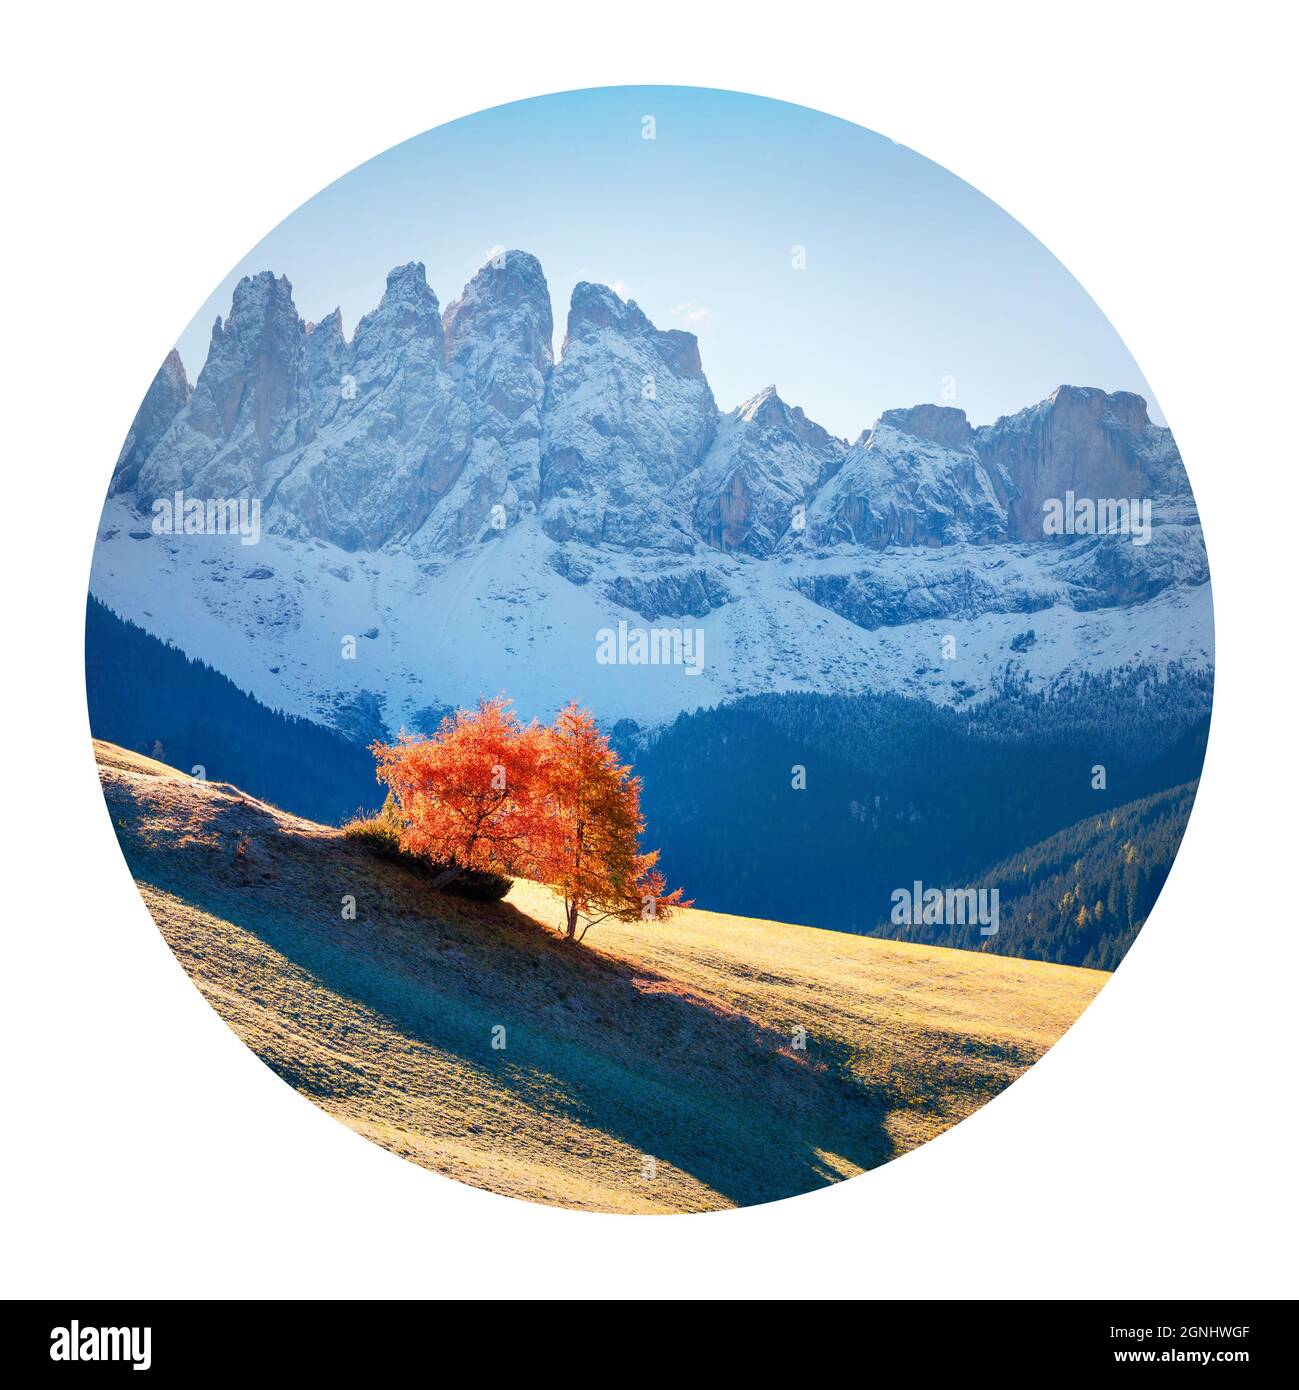 Runde Ikone der Natur mit Landschaft. Einsamer Baum im Dorf Santa Maddalena vor der Geisler- oder Geisler-Dolomiten-Gruppe, Dolomiten-Alpen, Italien, EUR Stockfoto